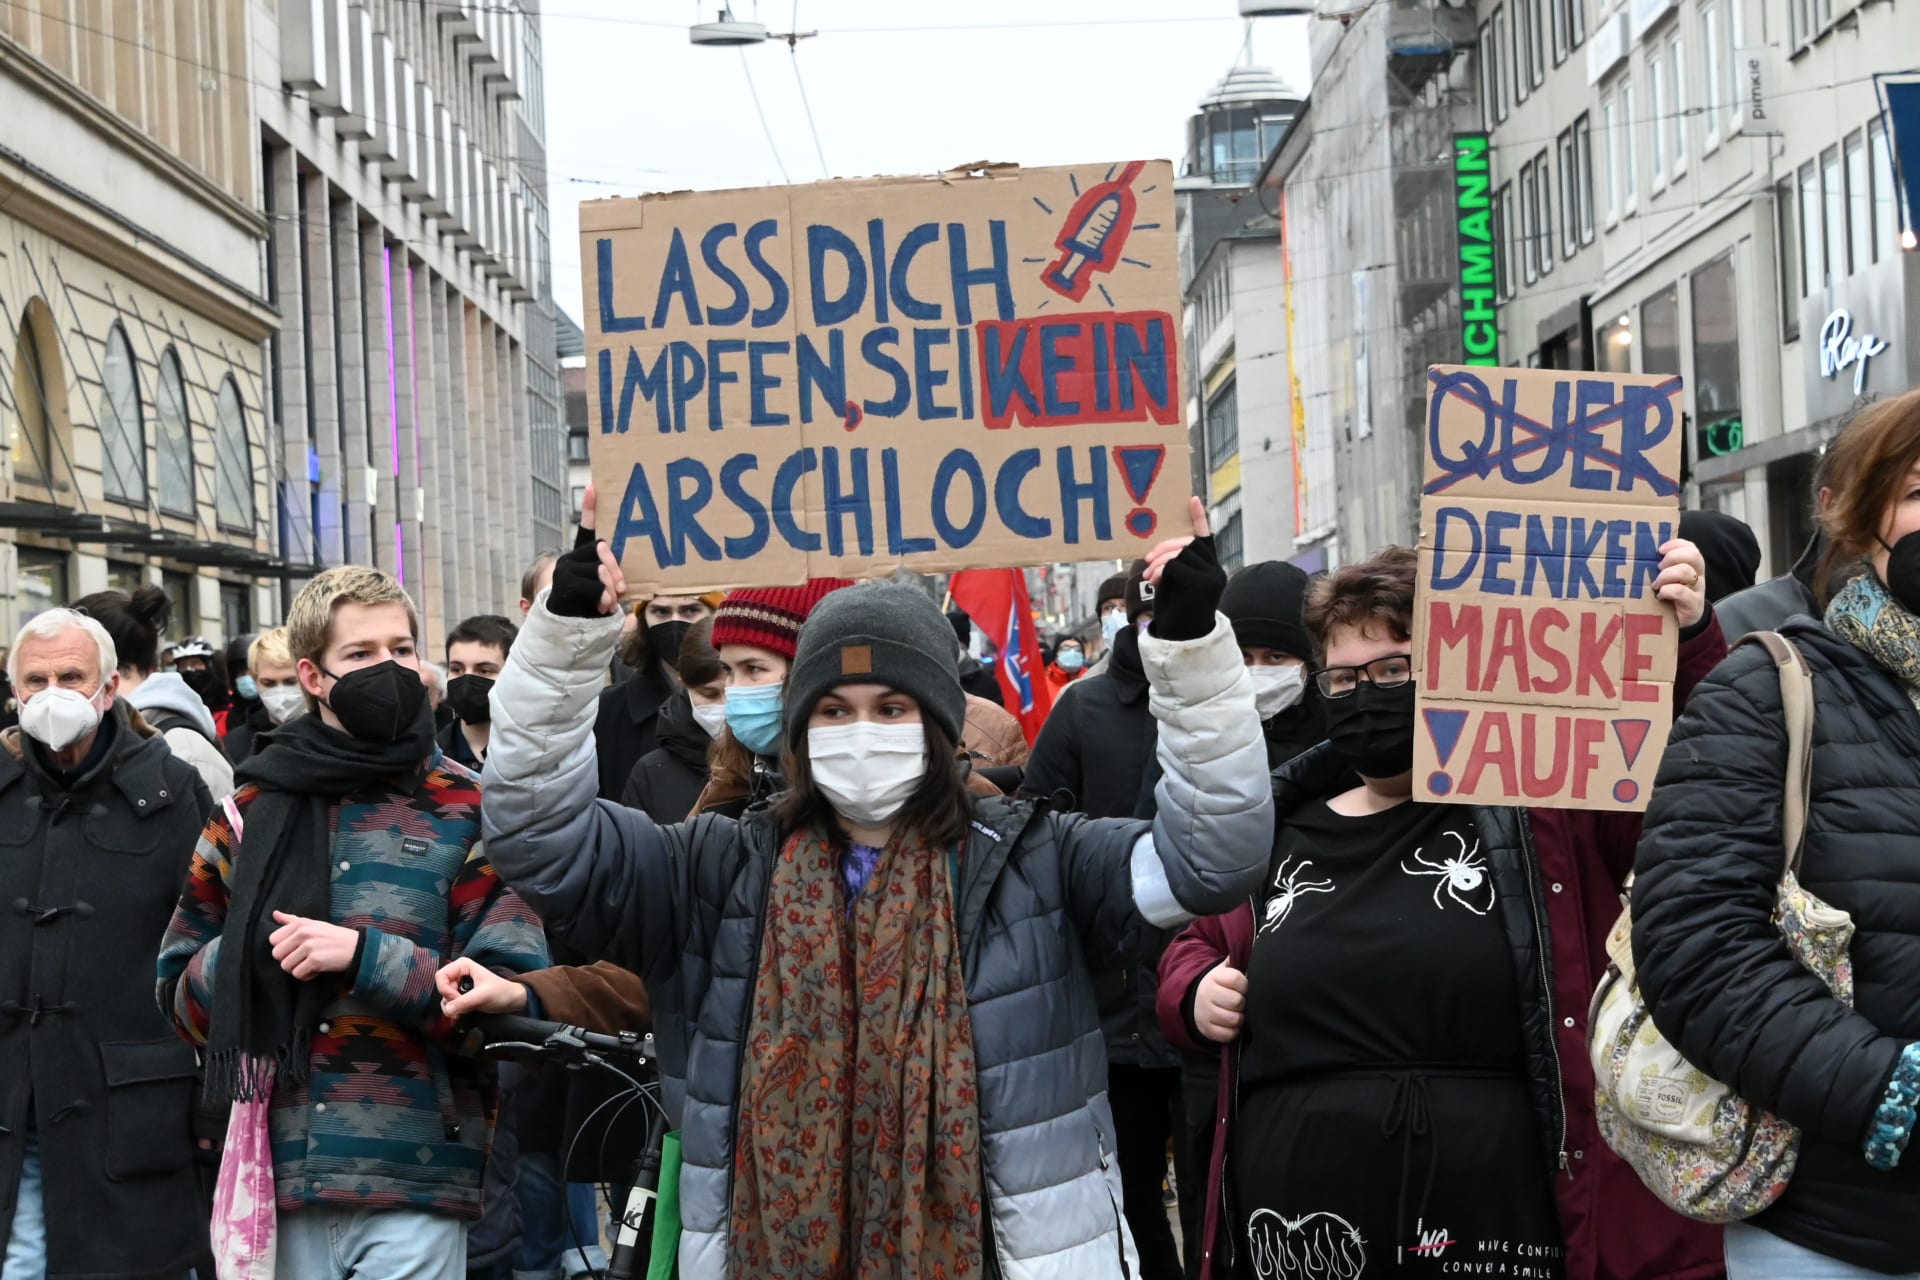 Demonstrace osob s opačným smýšlením v centru Freiburgu se zúčastnilo na 2 500 lidí. 